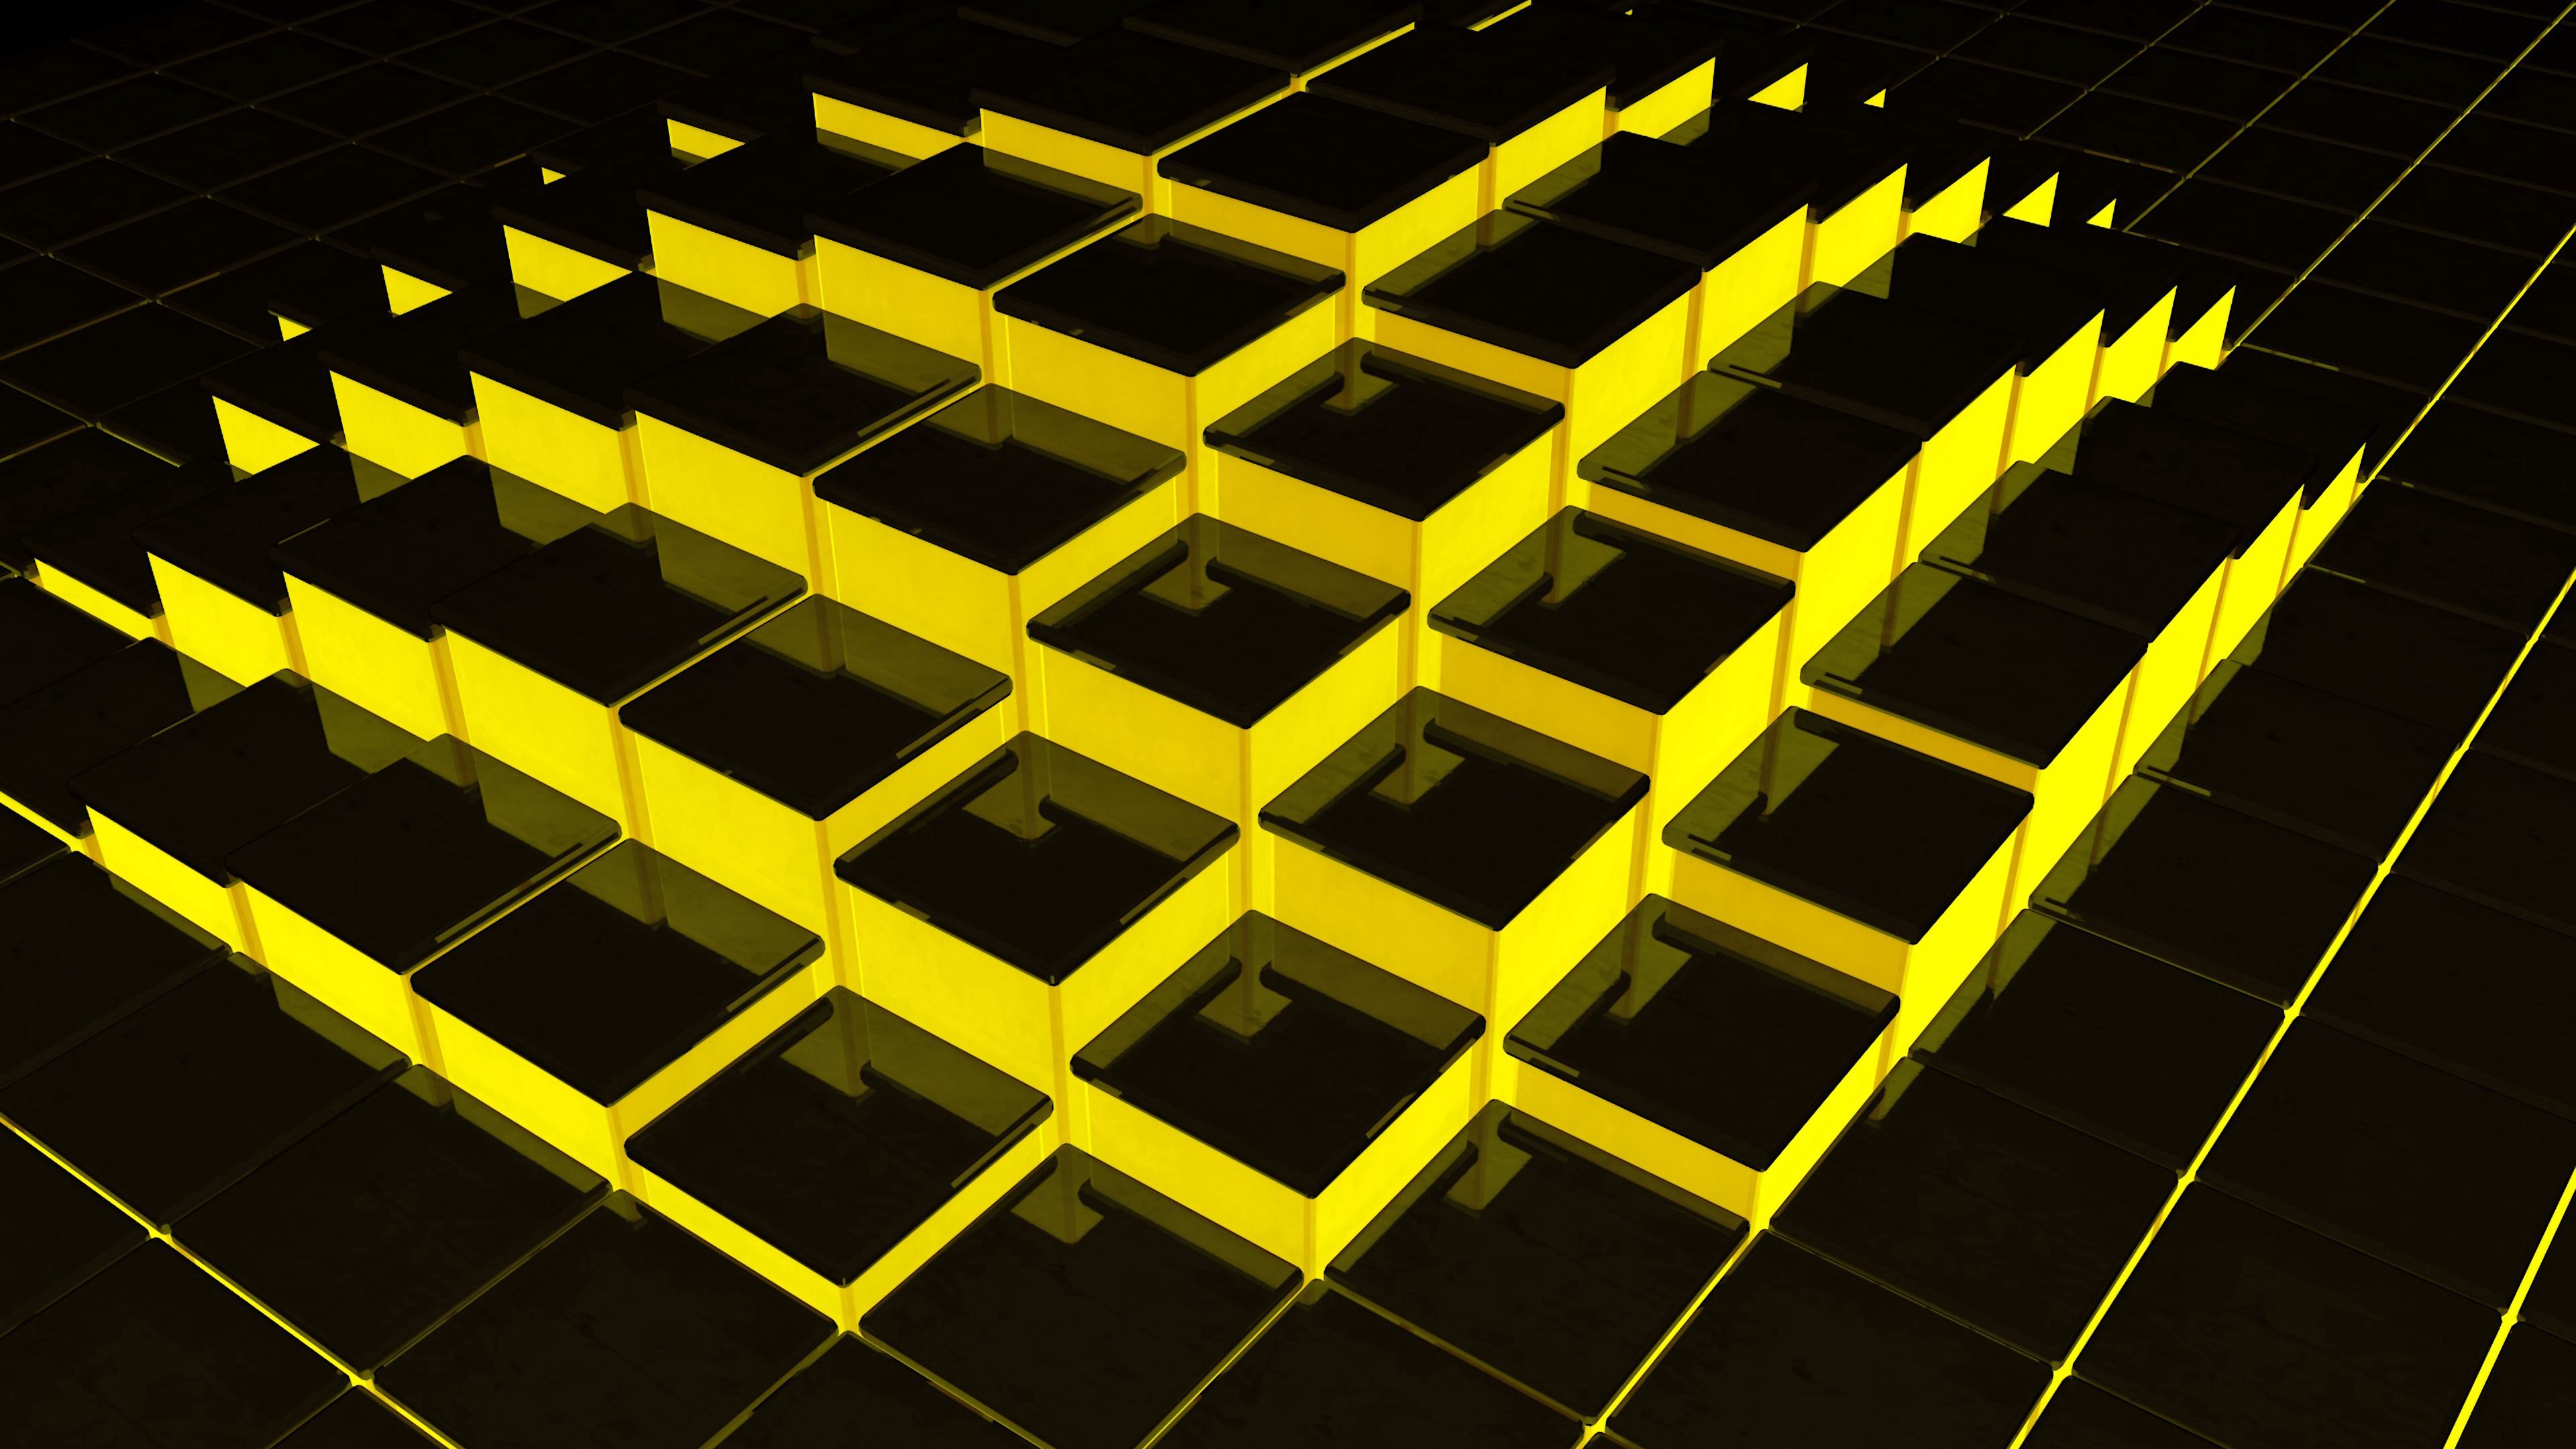 Hình nền 3840x2160 cấu trúc, khối lập phương, 3D, màu vàng, đen sẽ thổi bùng sự trẻ trung và năng động vào không gian làm việc của bạn. Các khối lập phương 3D với màu vàng tươi sáng nổi bật trên nền đen sẽ làm cho màn hình của bạn trở nên hấp dẫn và sáng tạo.